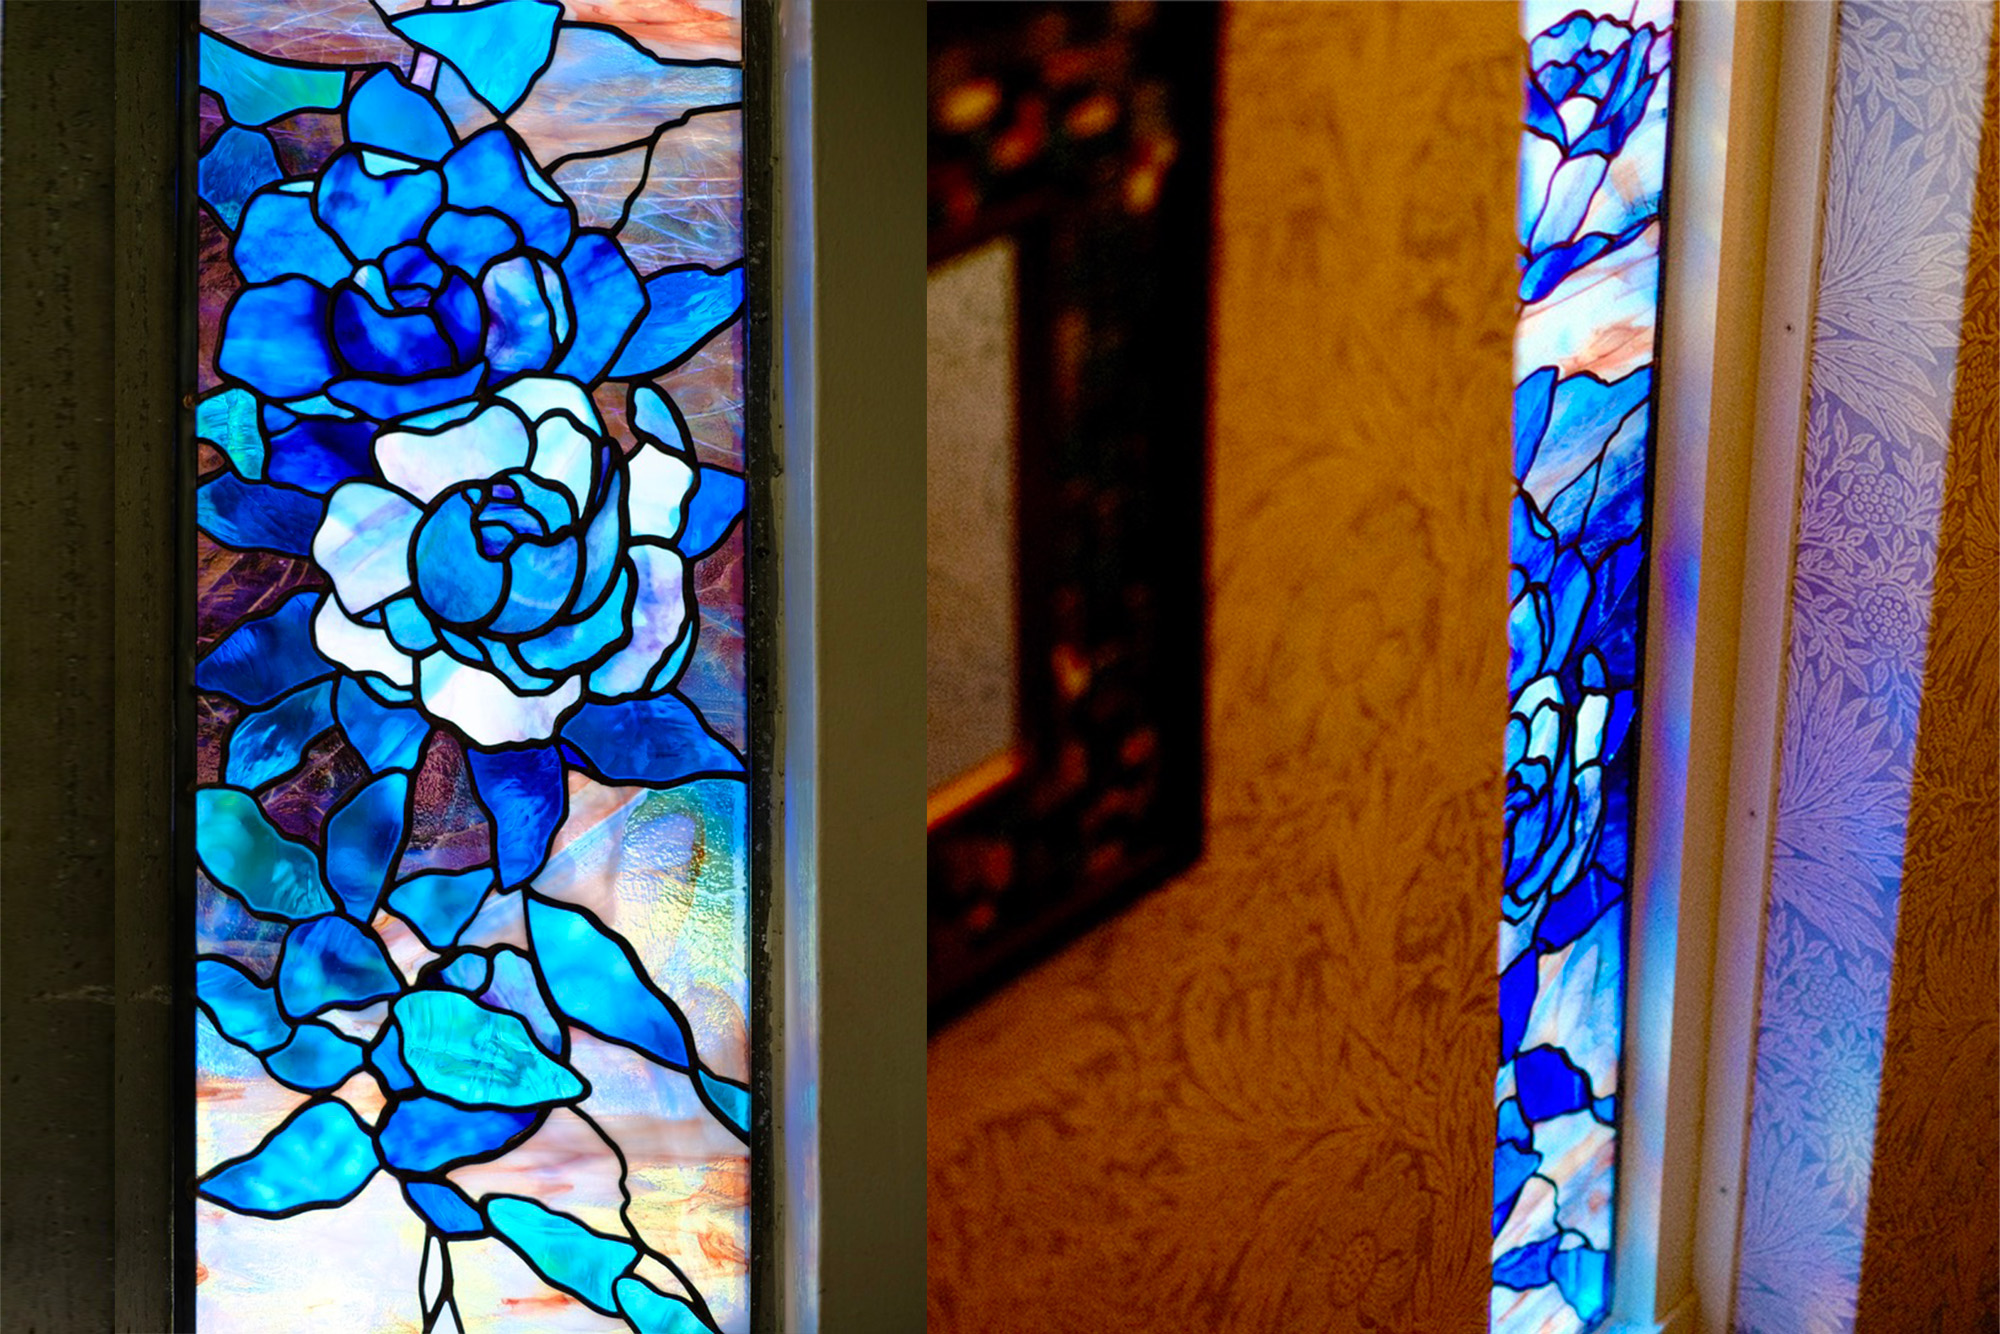 青い薔薇のステンドグラス のアイキャッチ画像